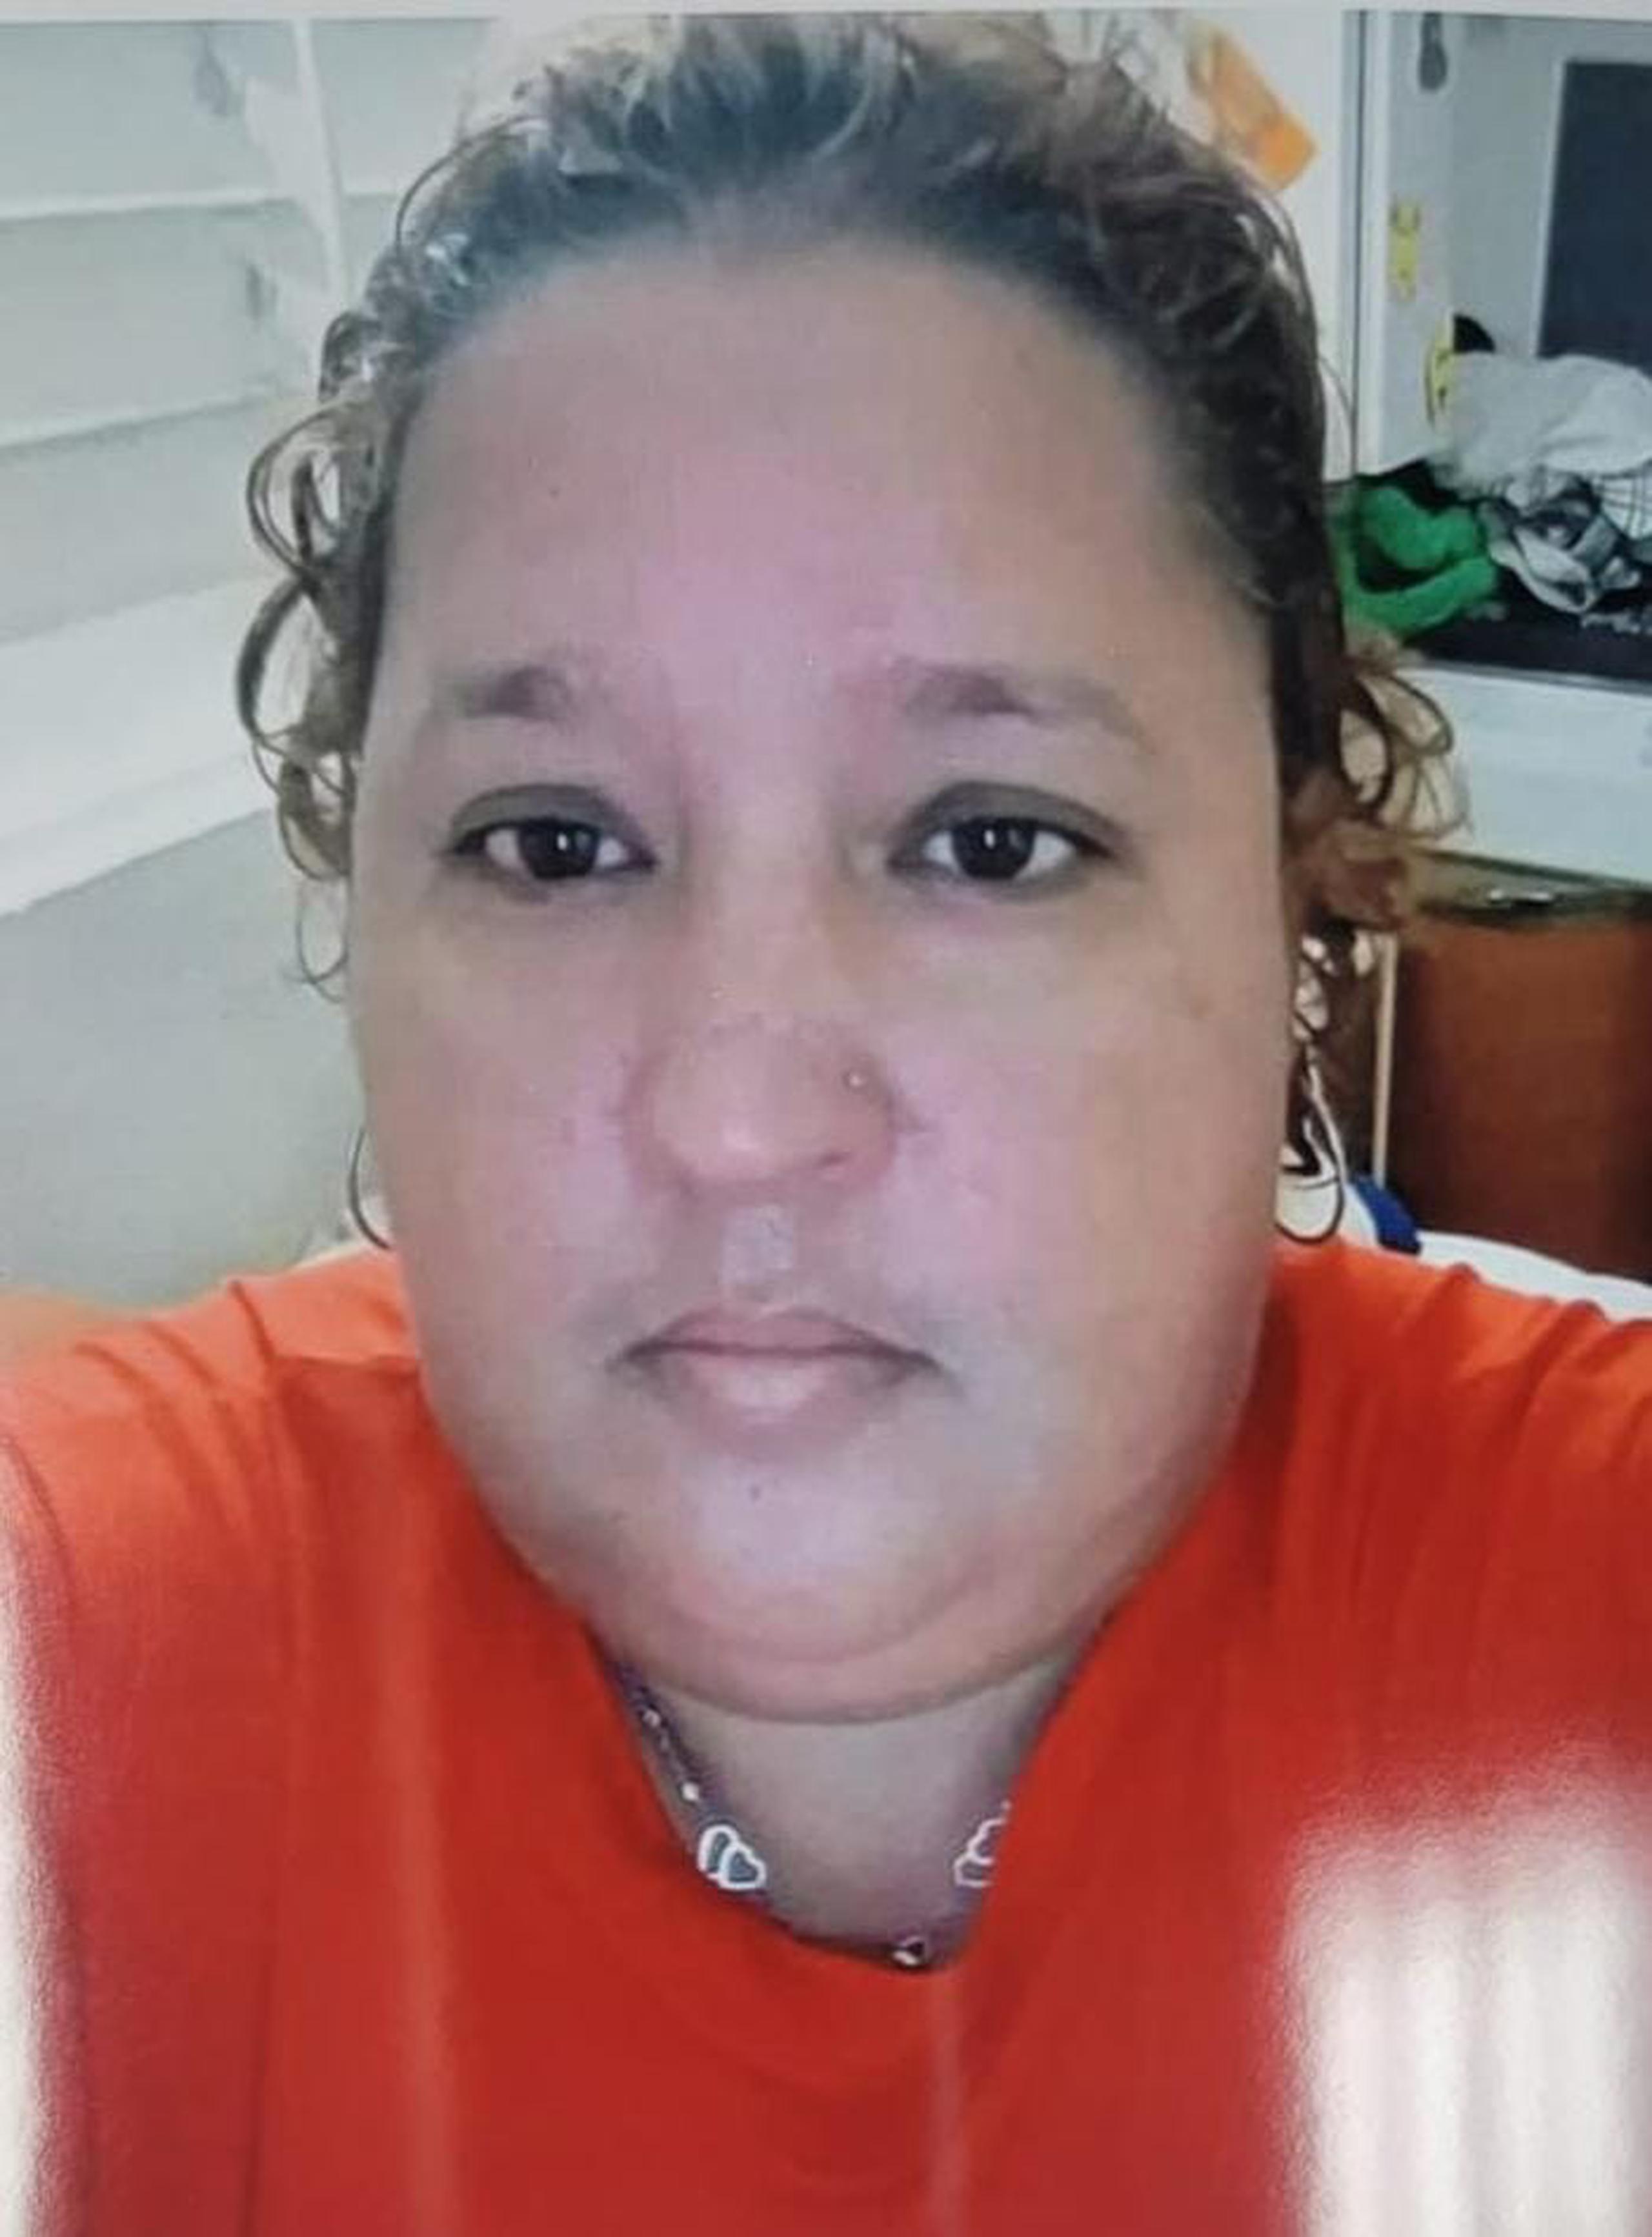 Elmis Yadira Medina Marín, de 40 años, vecina del residencial Las Mesetas, en Arecibo, se encuentra desaparecida desde la madrugada del jueves, 2 de febrero.